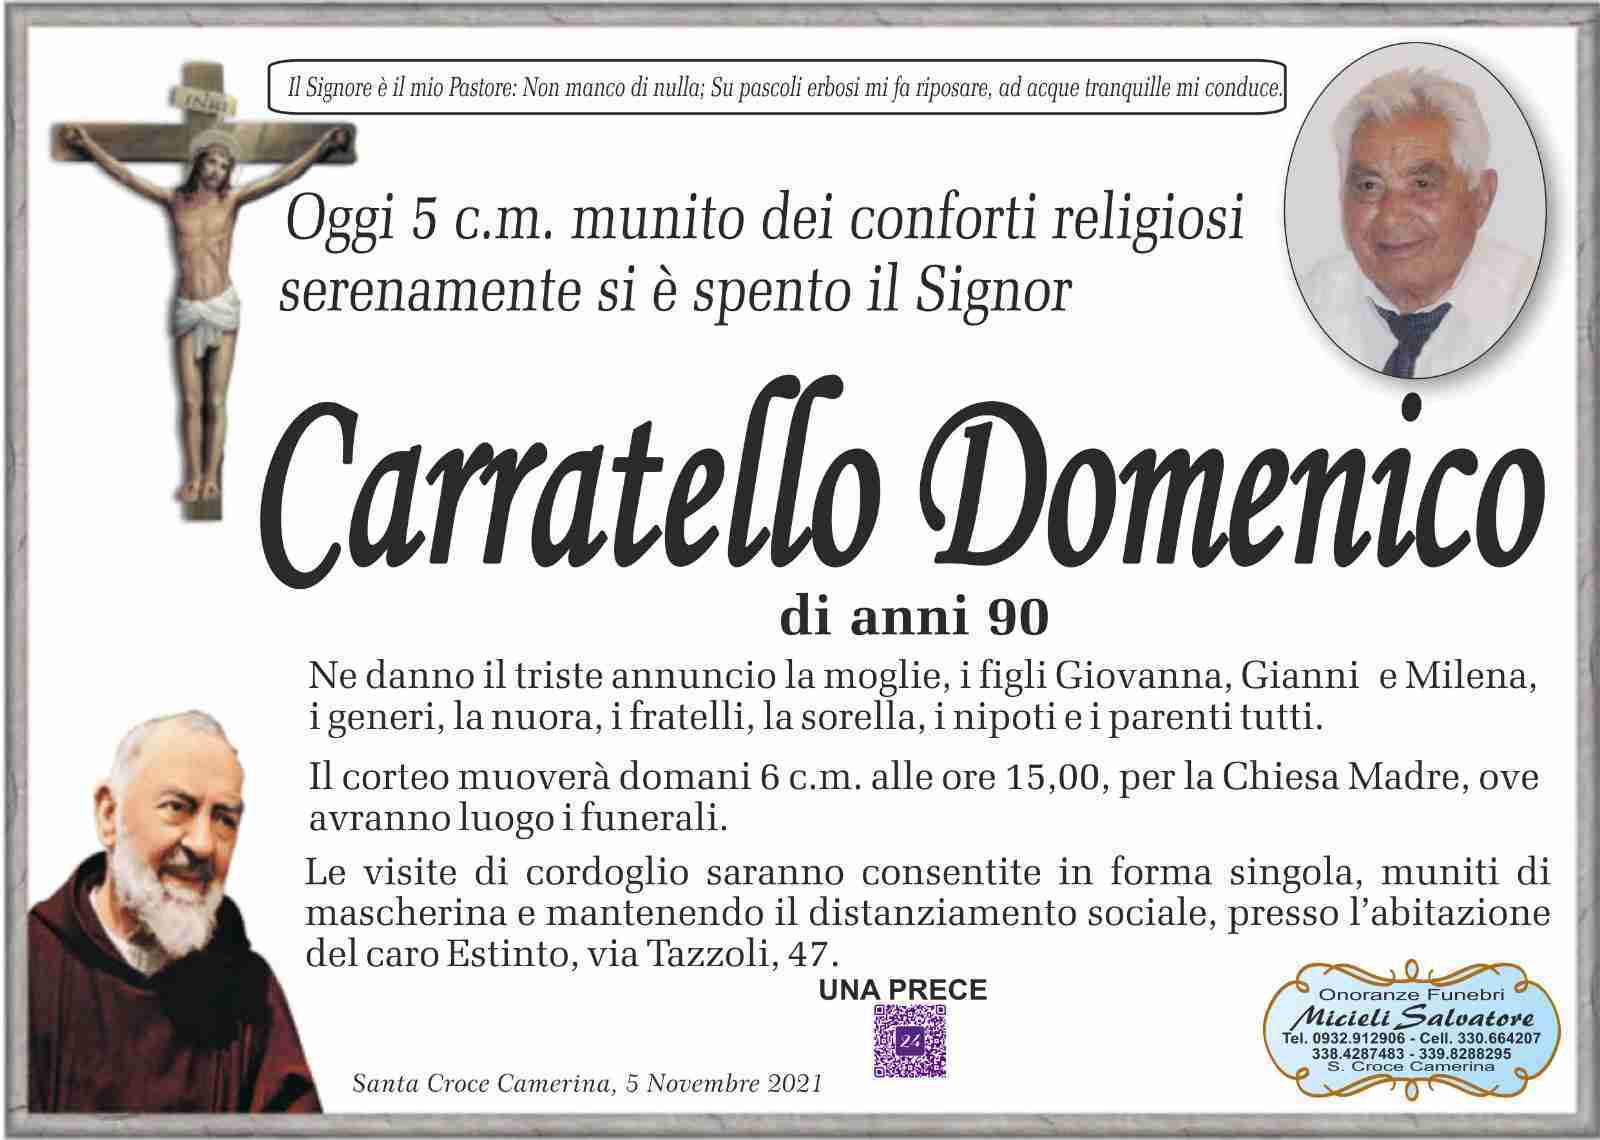 Domenico Carratello